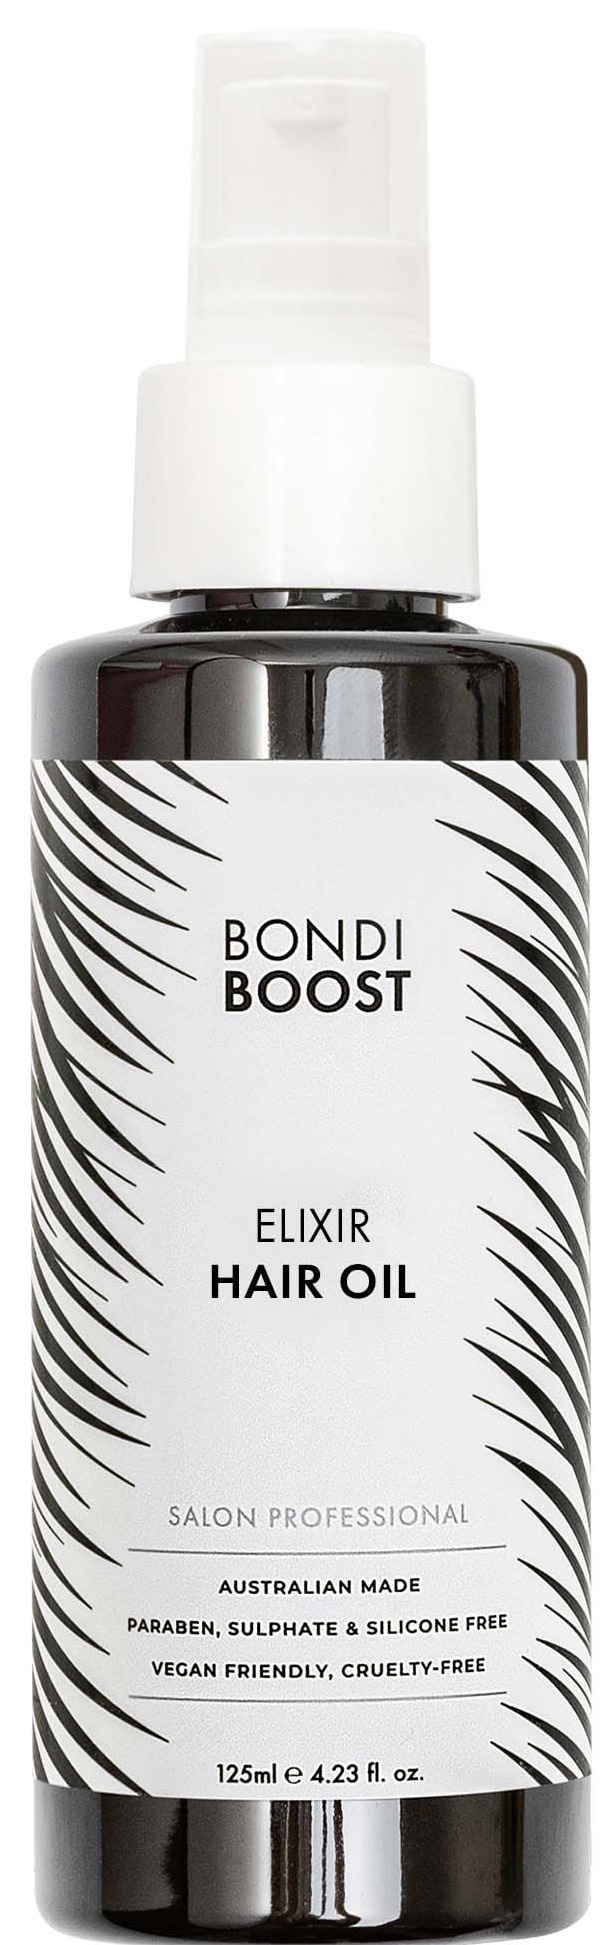 Bondi Boost Elixir Hair Oil Pre-shampoo Treatment With Castor Oil